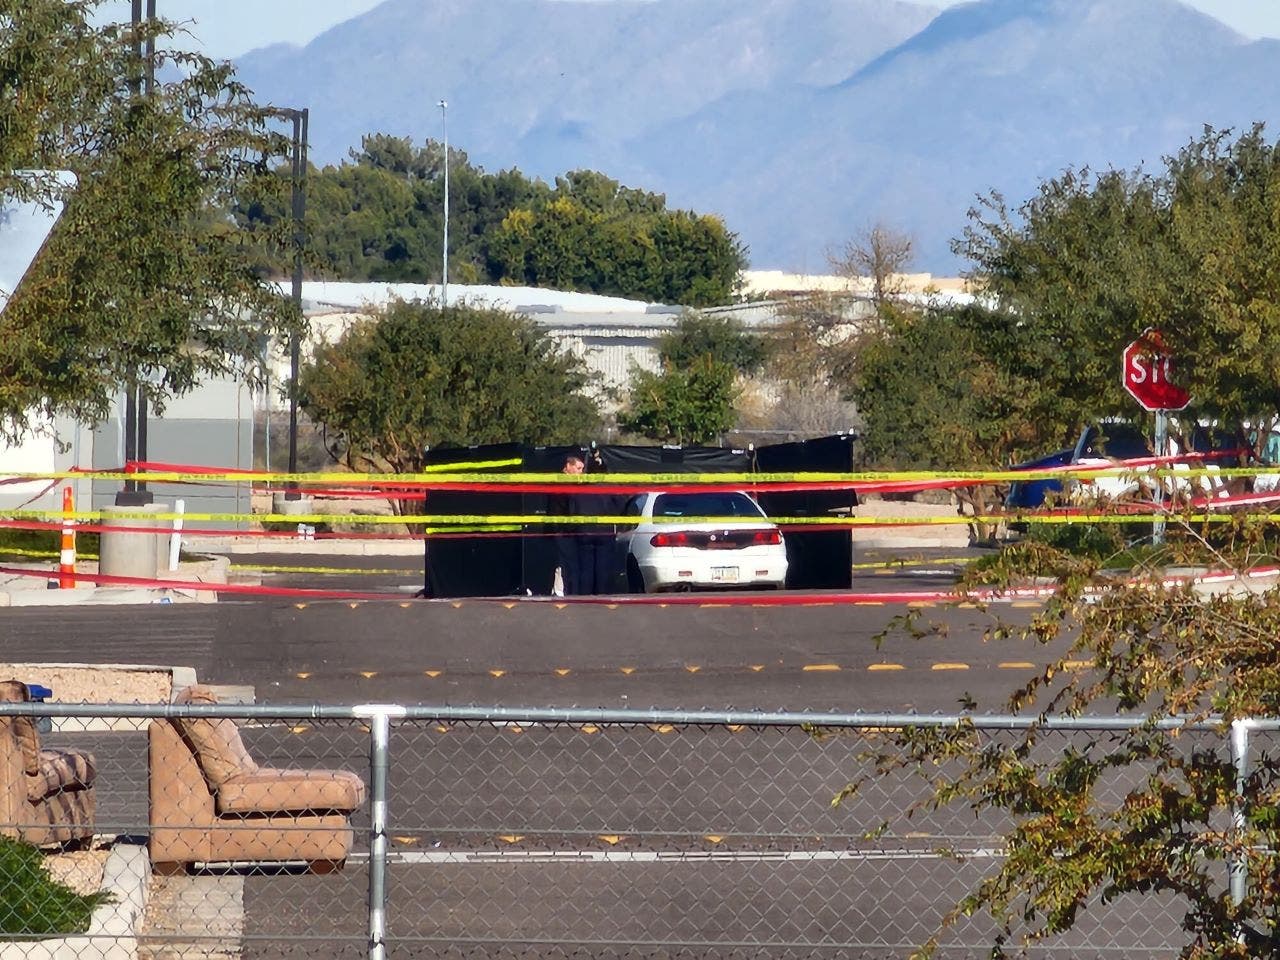 Armed Amazon employee stops shooter who opened fire at Arizona facility: ‘good Samaritan’